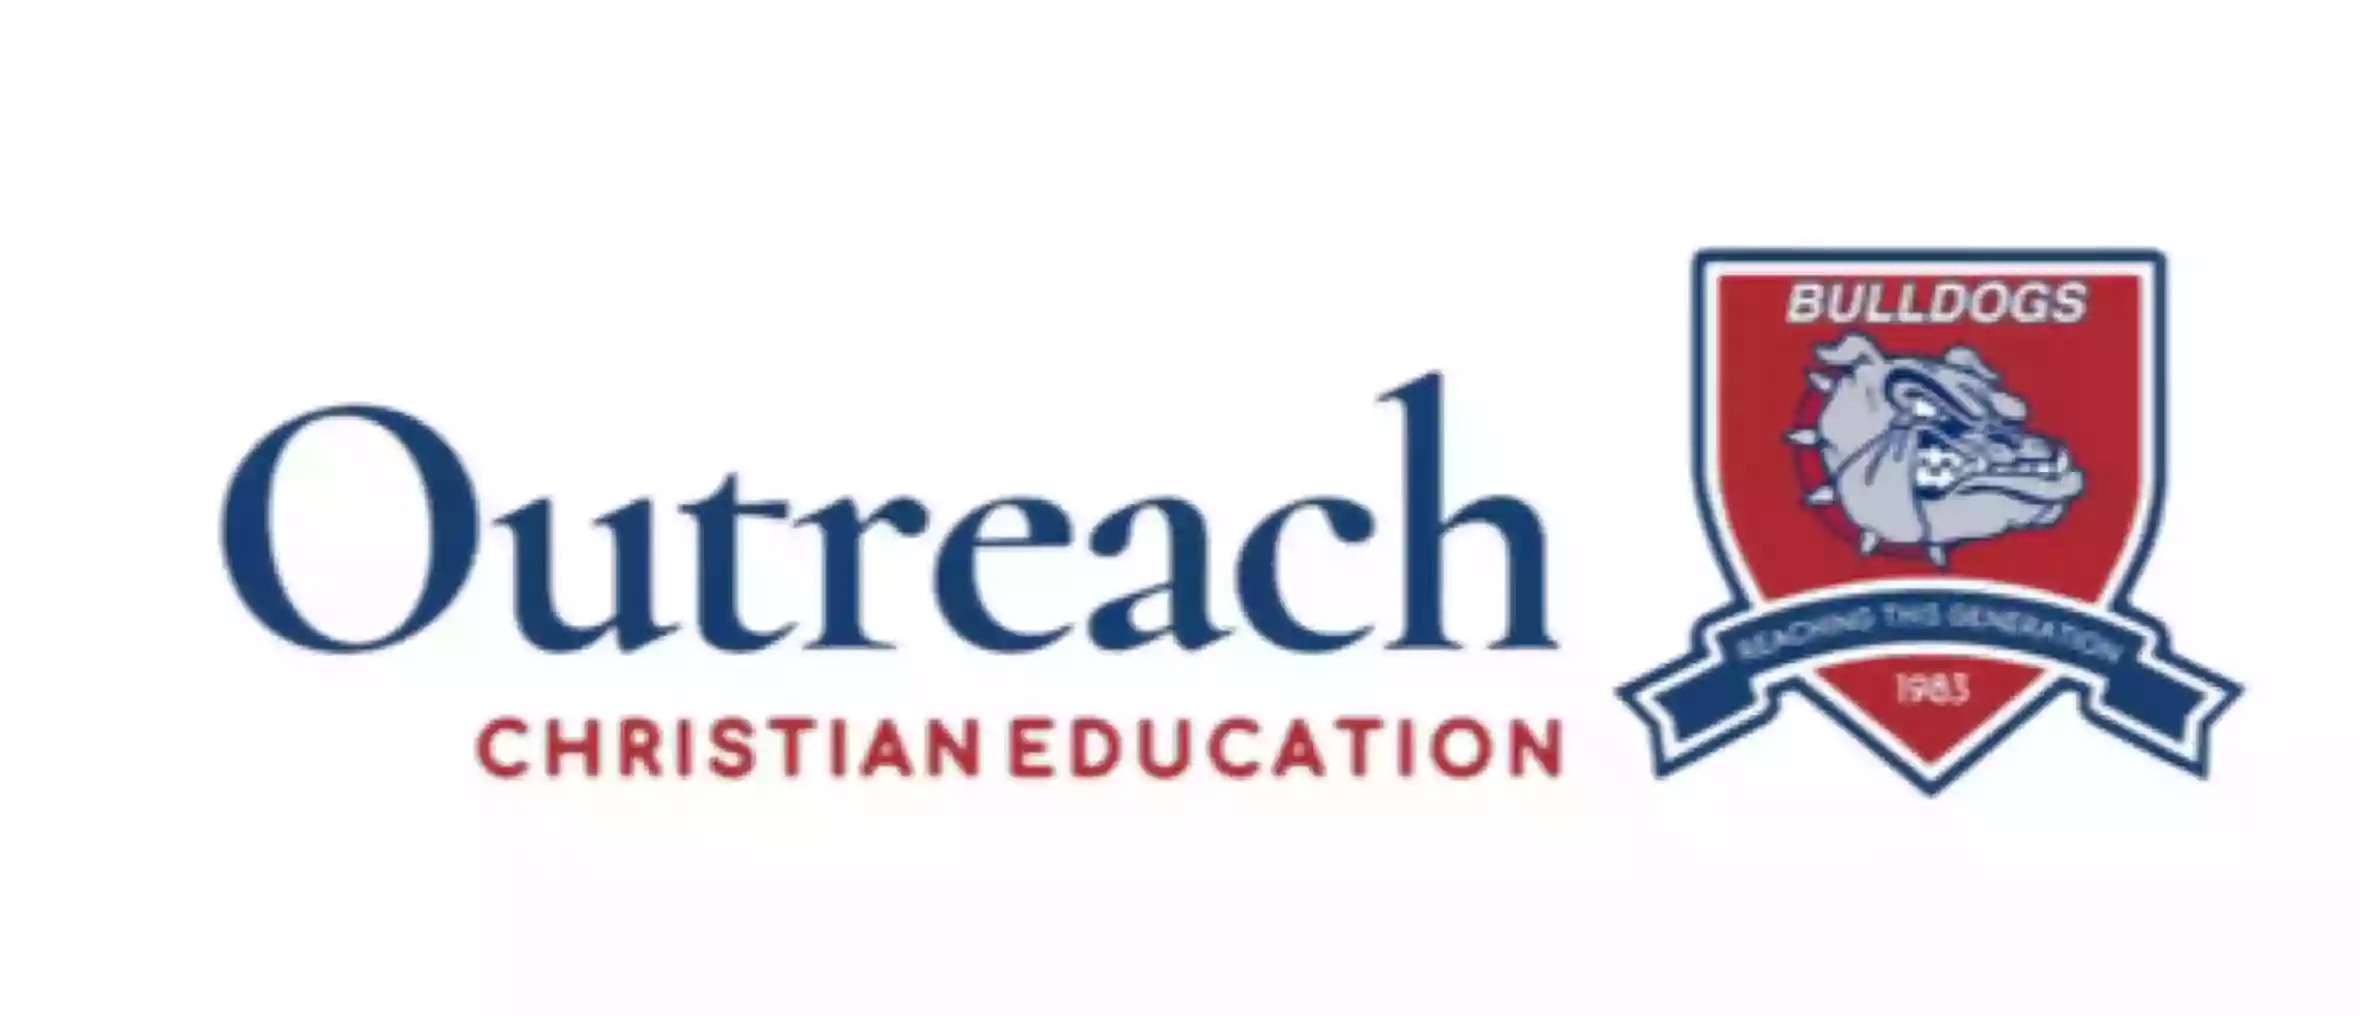 Outreach Christian Education